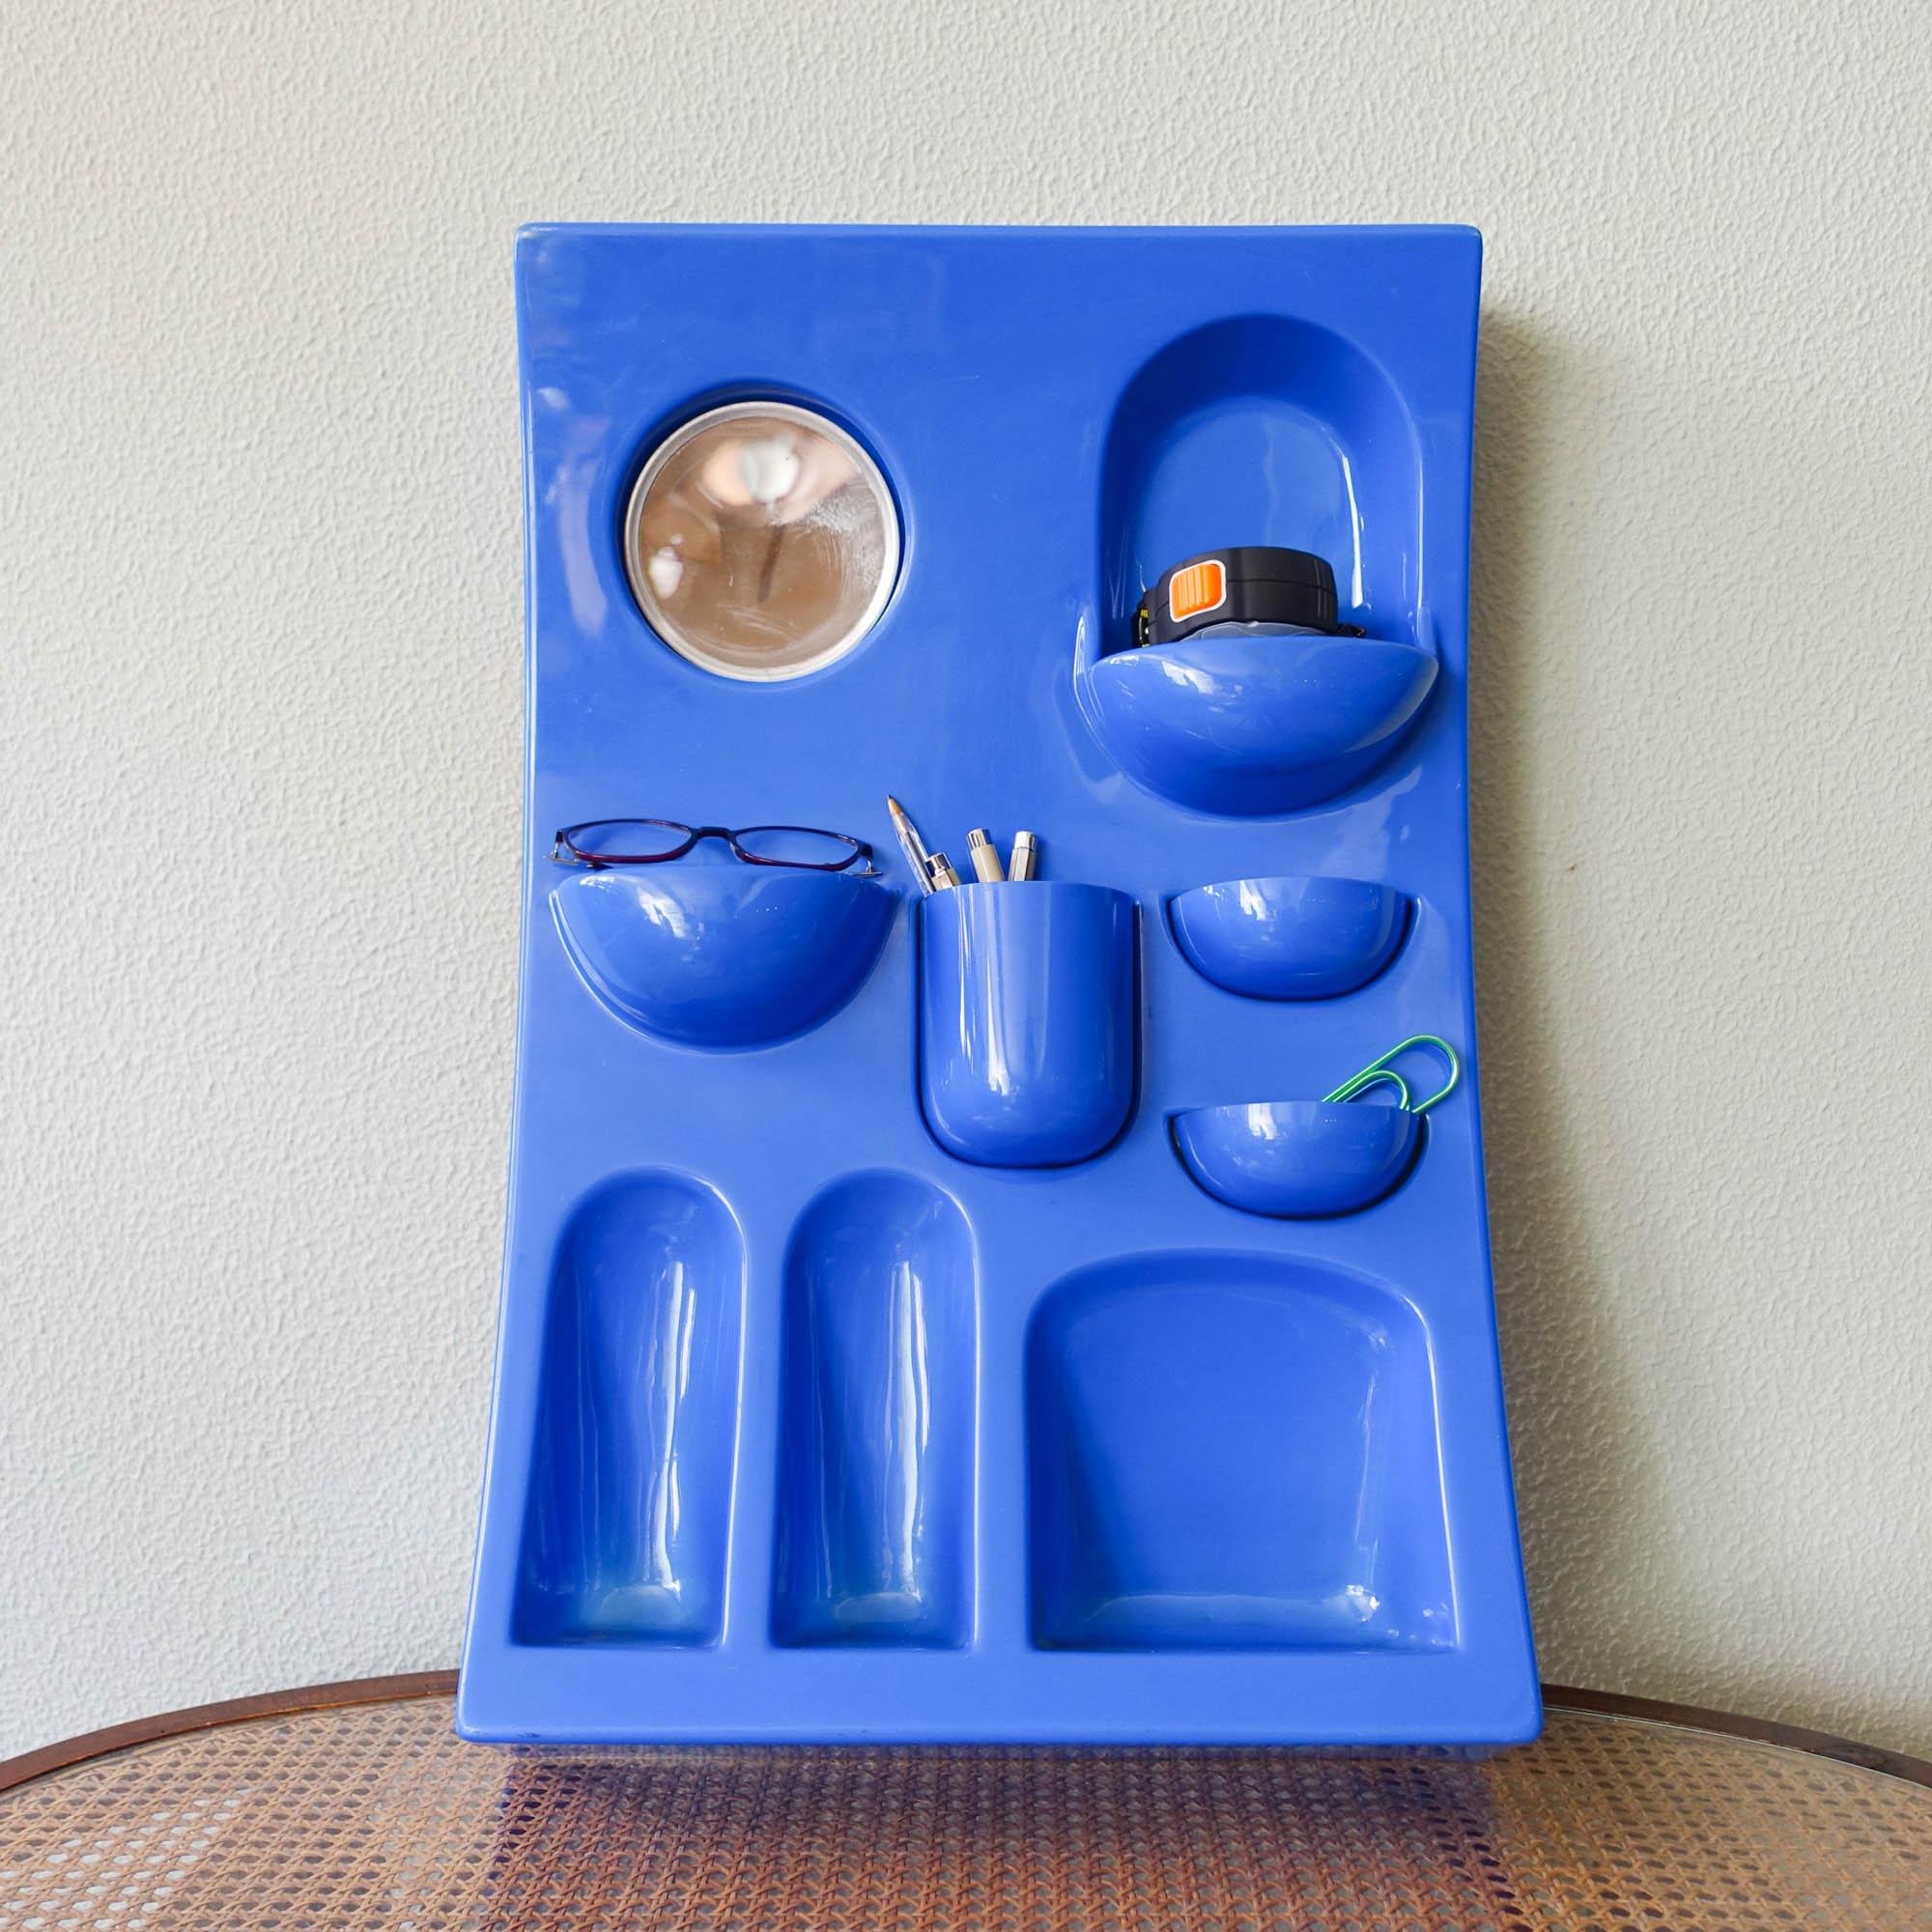 Ein blauer ABS-Kunststoff-Wandorganizer aus den 1970er Jahren. Entworfen und hergestellt von Visiva srl, Mailand, Italien, in den 1970er Jahren. Ähnlich verhält es sich mit dem Uten.Silo von Dorothee Becker für Vitra. Mit einer Vielzahl von kleinen